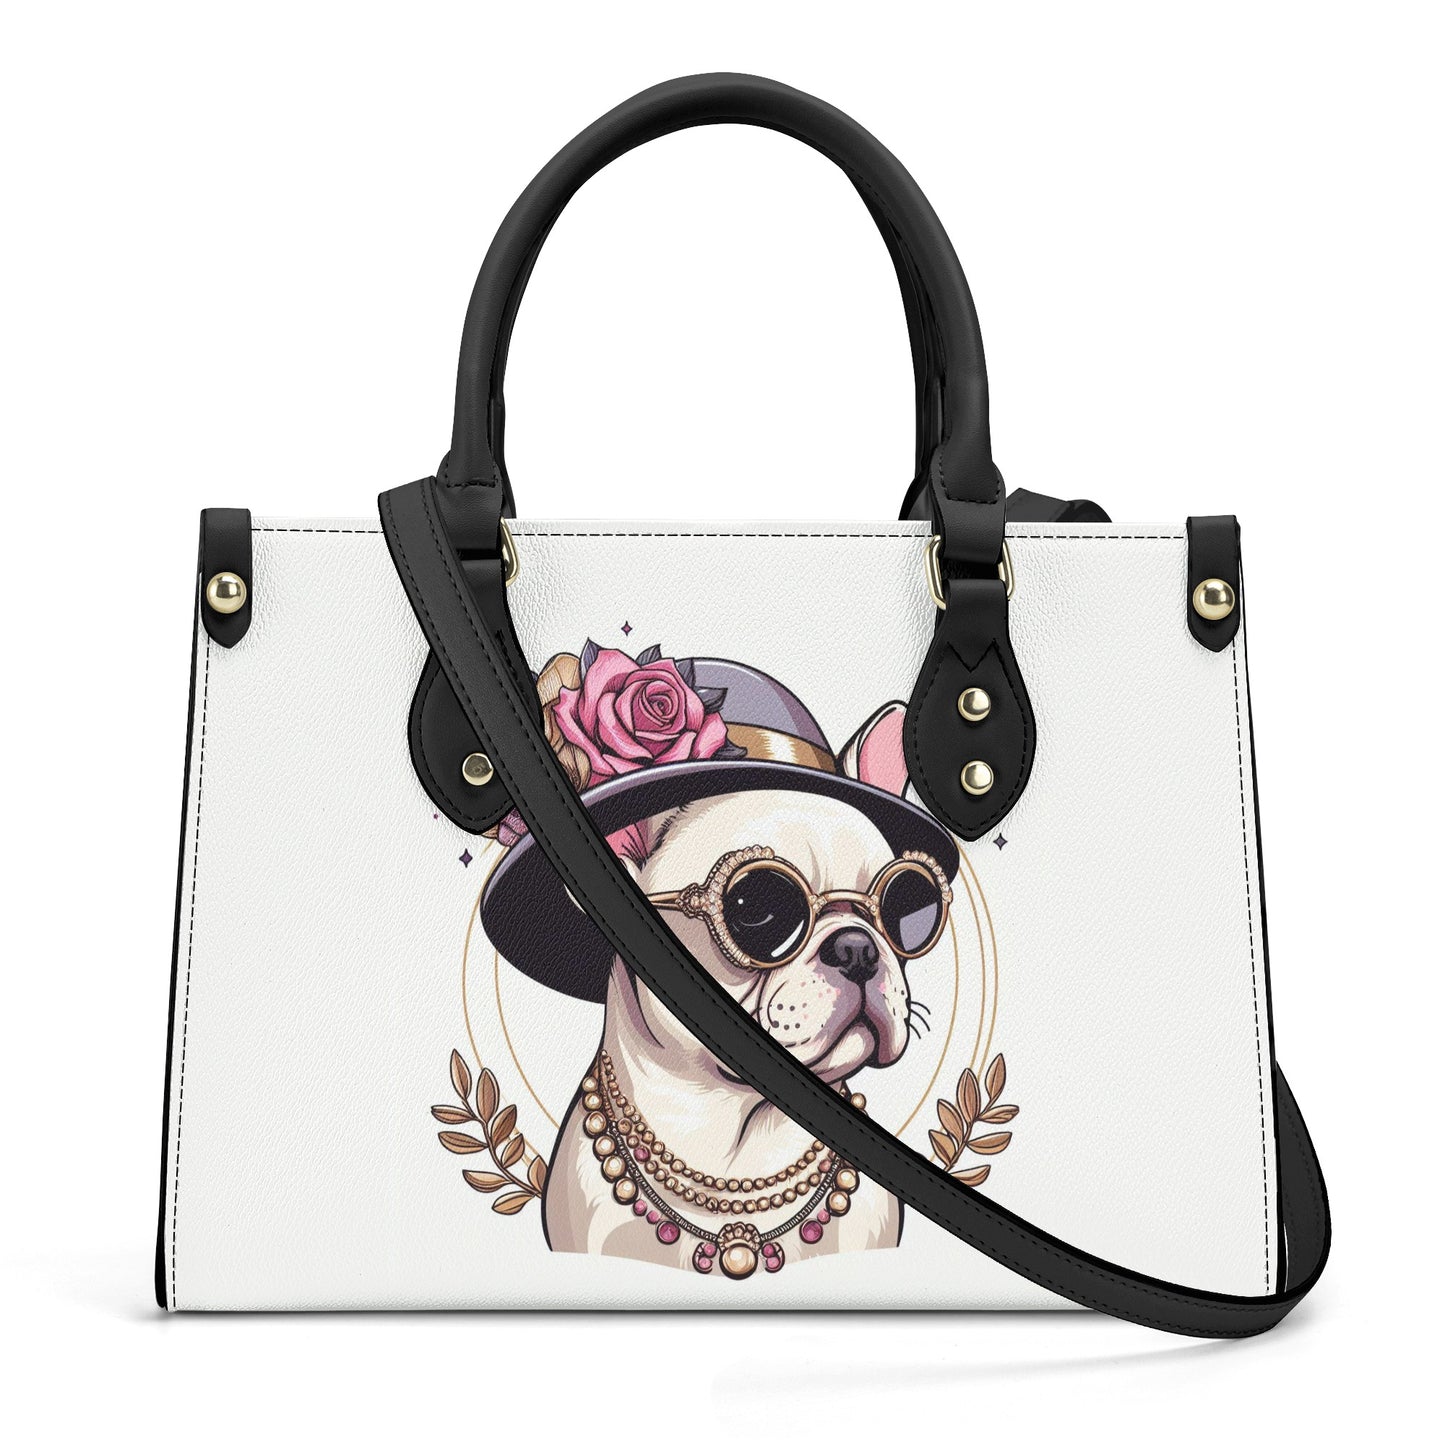 Queen - Luxury Women Handbag